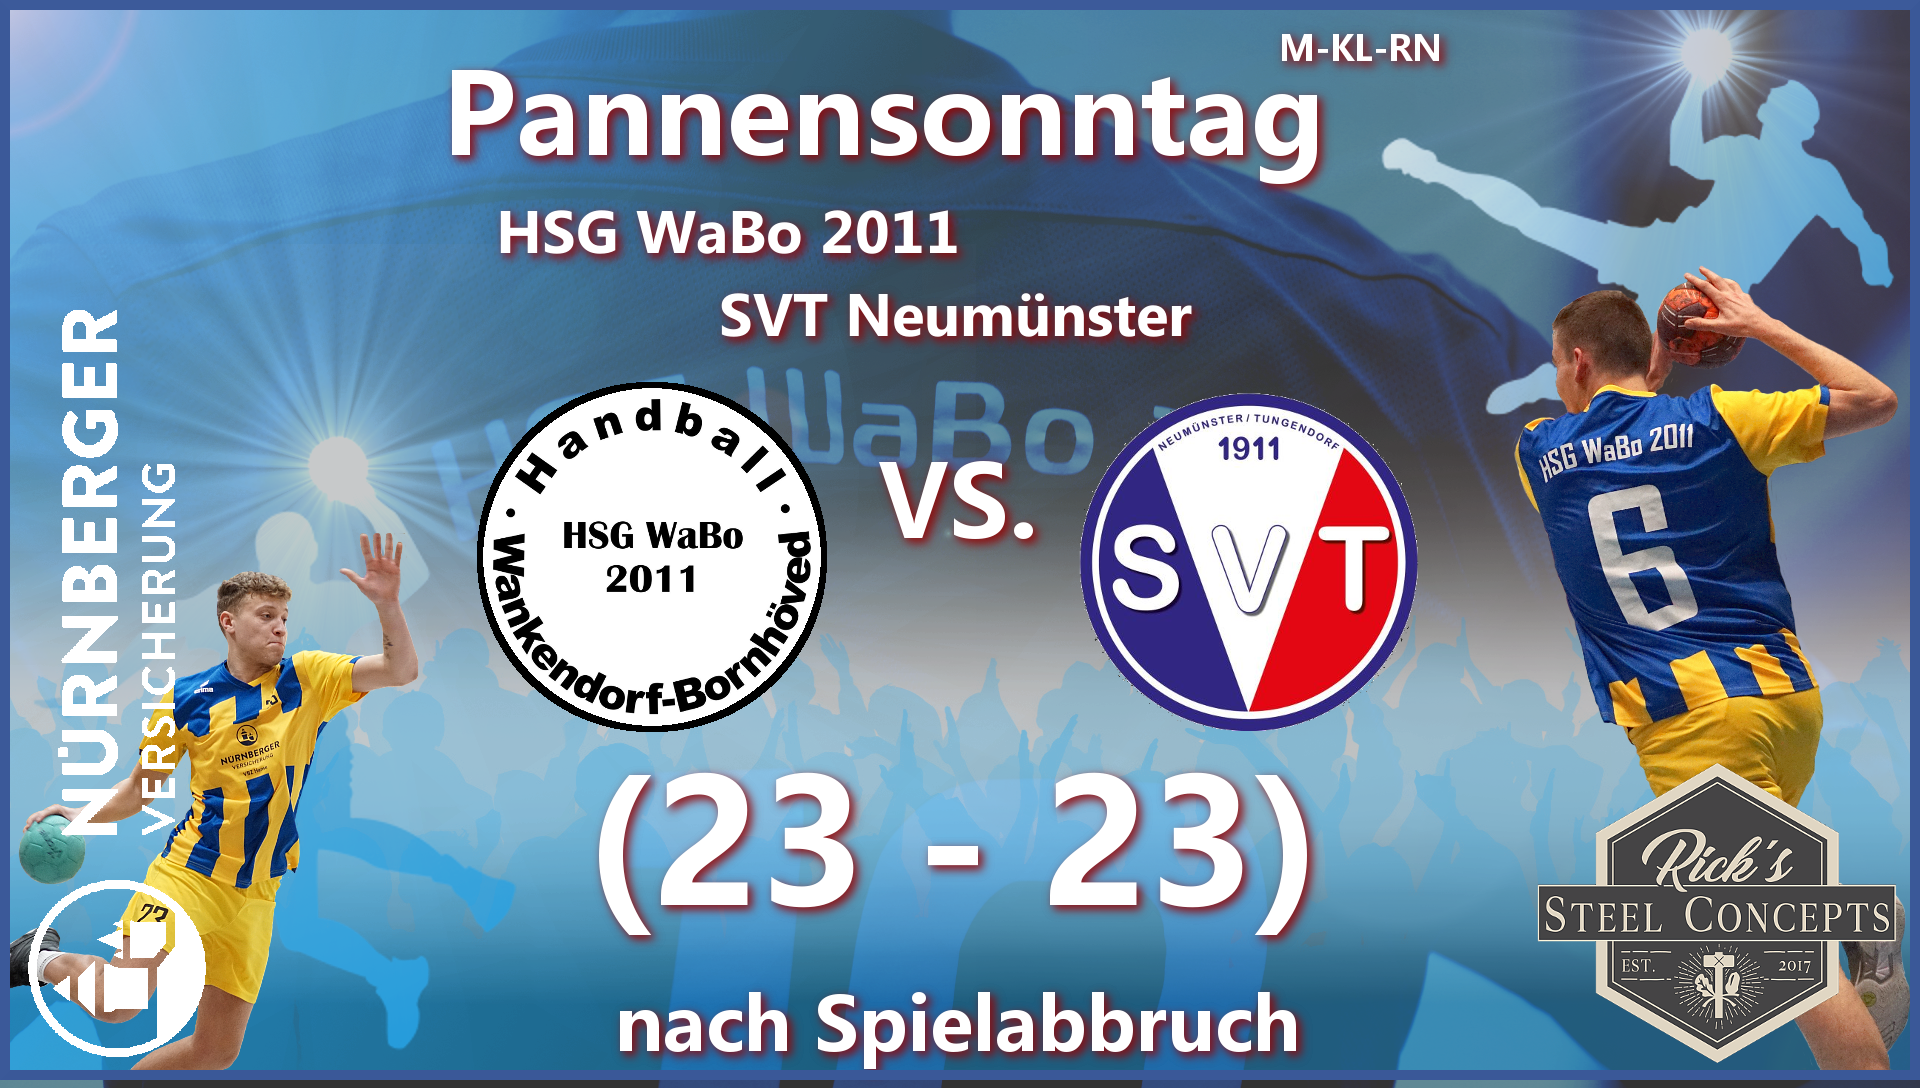 Ergebnis - HSG WaBo 2011 vs. SVT Neumünster